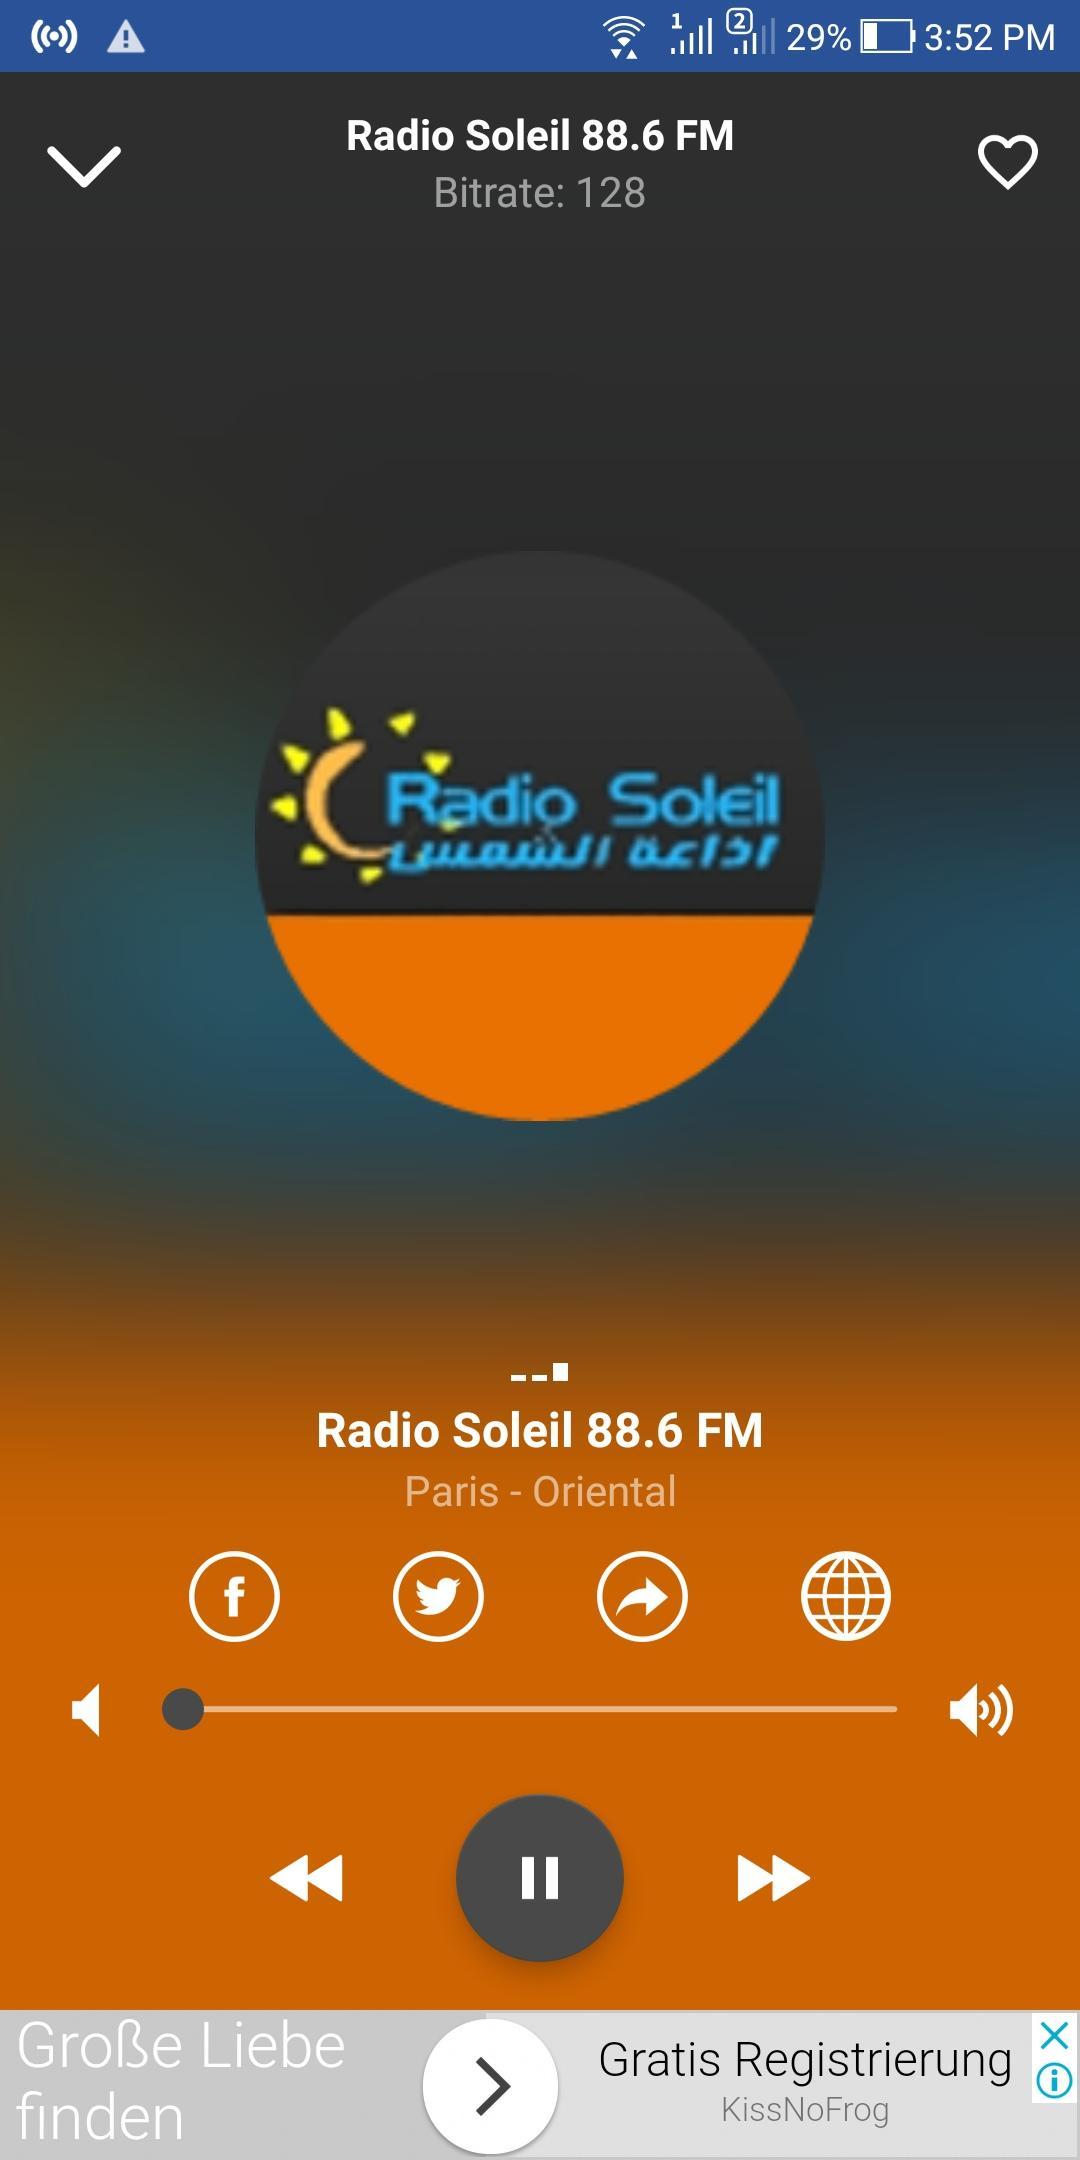 Radio Soleil 88.6 FM - Musique Franco Arabe APK pour Android Télécharger